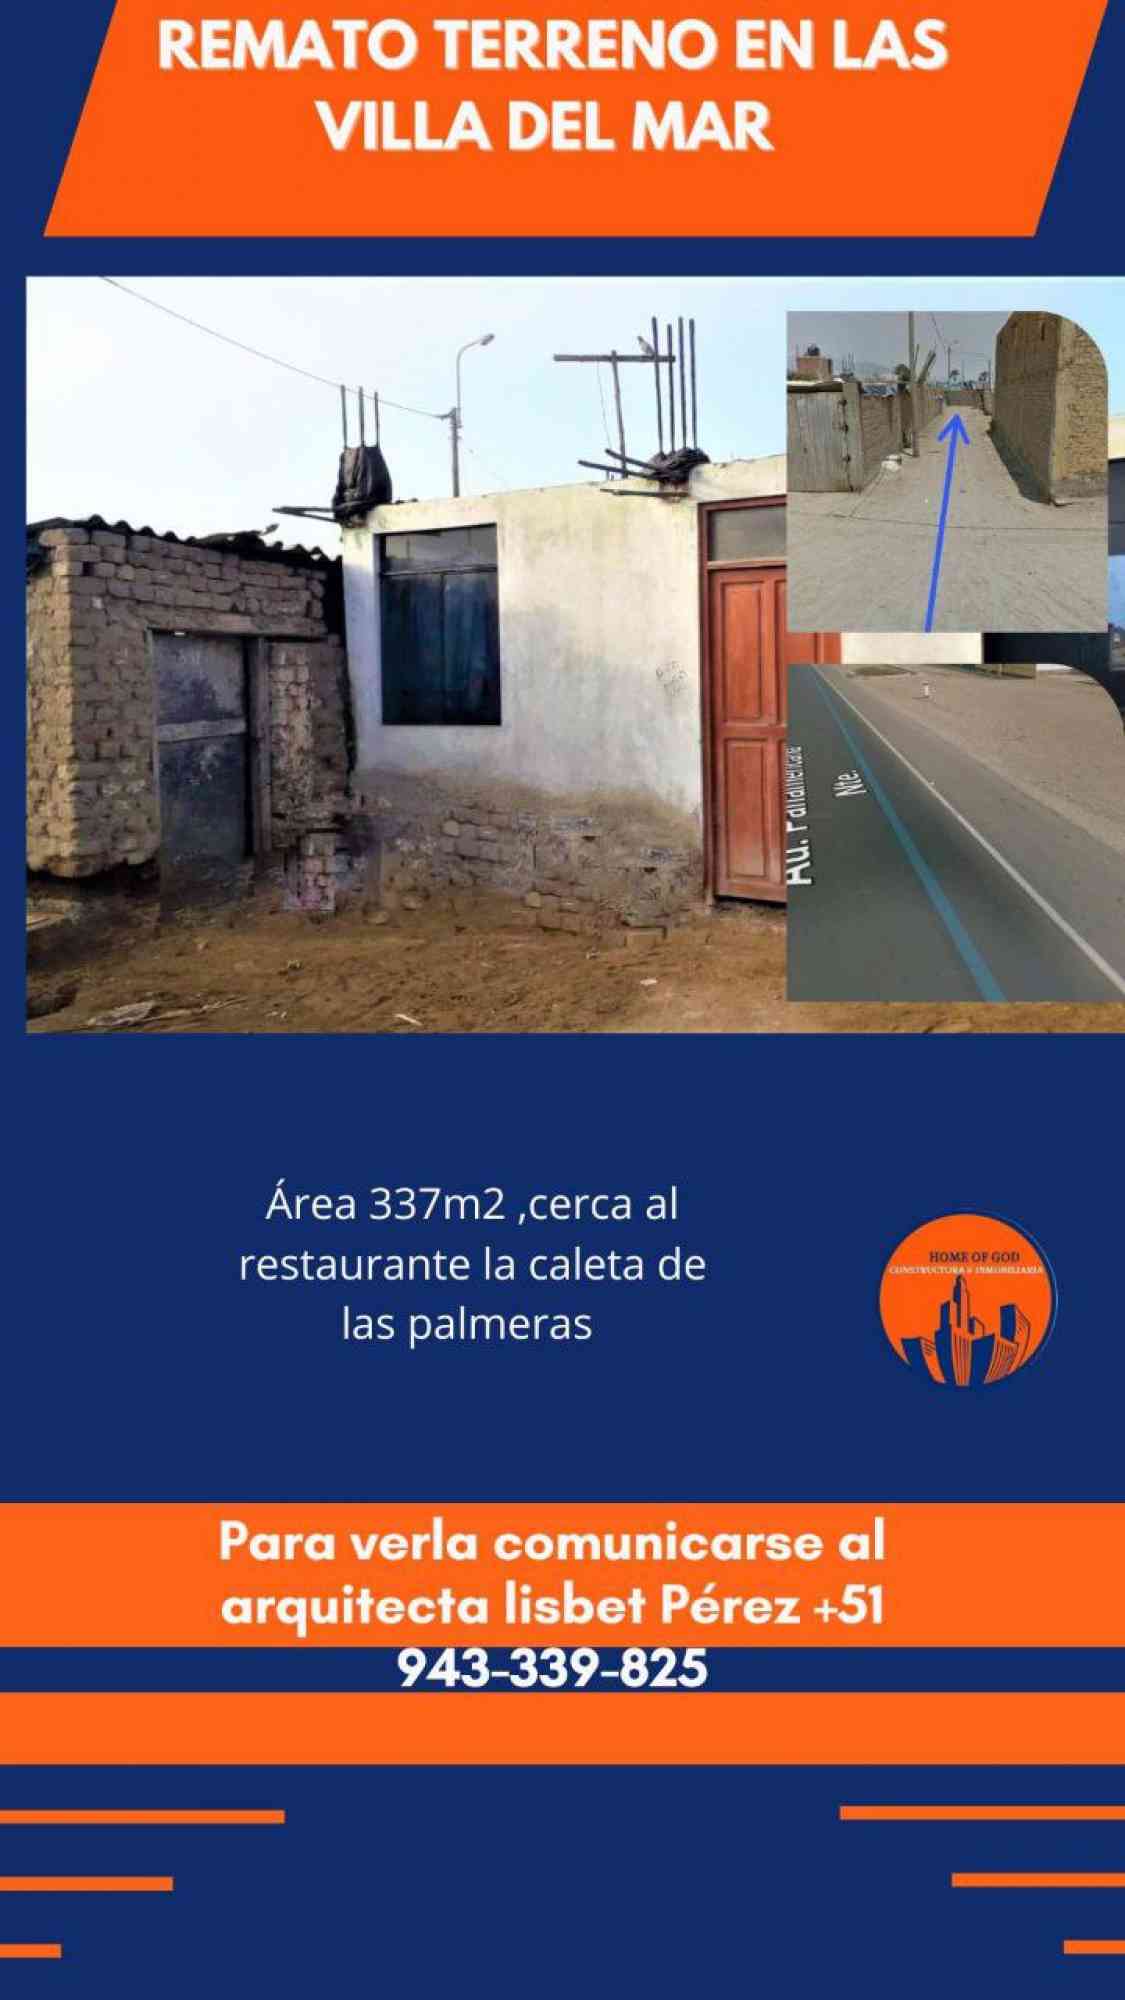 Departamentos en Venta y Alquiler - Venta de Casas y Terrenos - Todoclasificados, VENDO TERRENO EN VILLA DE MAR